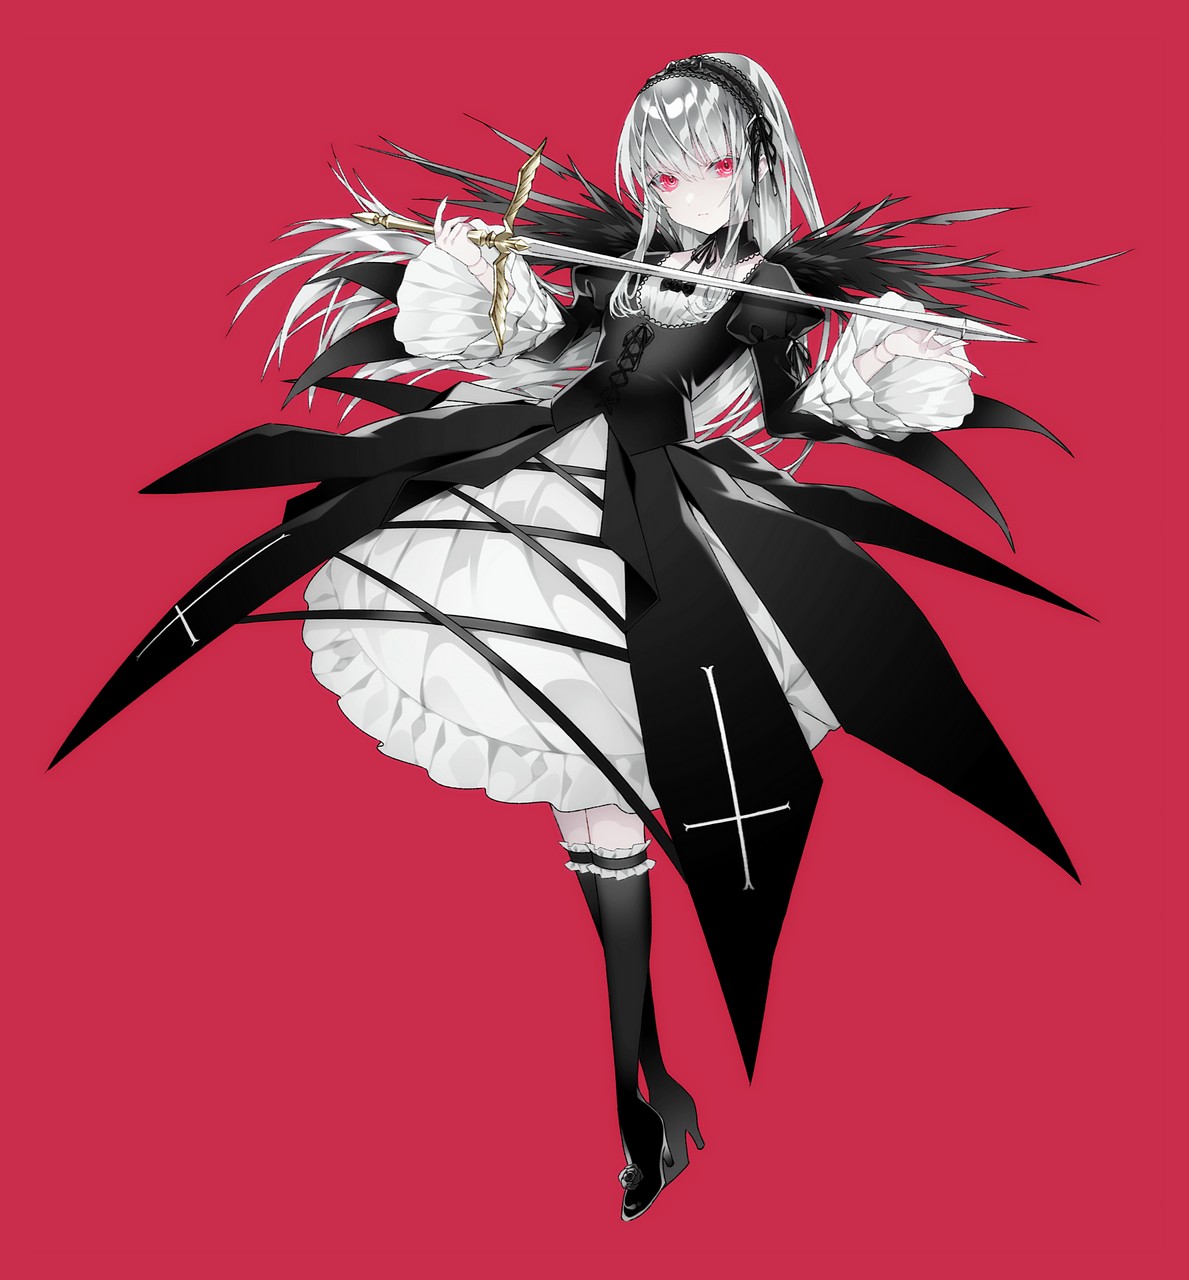 1055 Rozen Maiden Suigintou Dress Gothic Lolita Heels Lolita Fashion Sword Wing